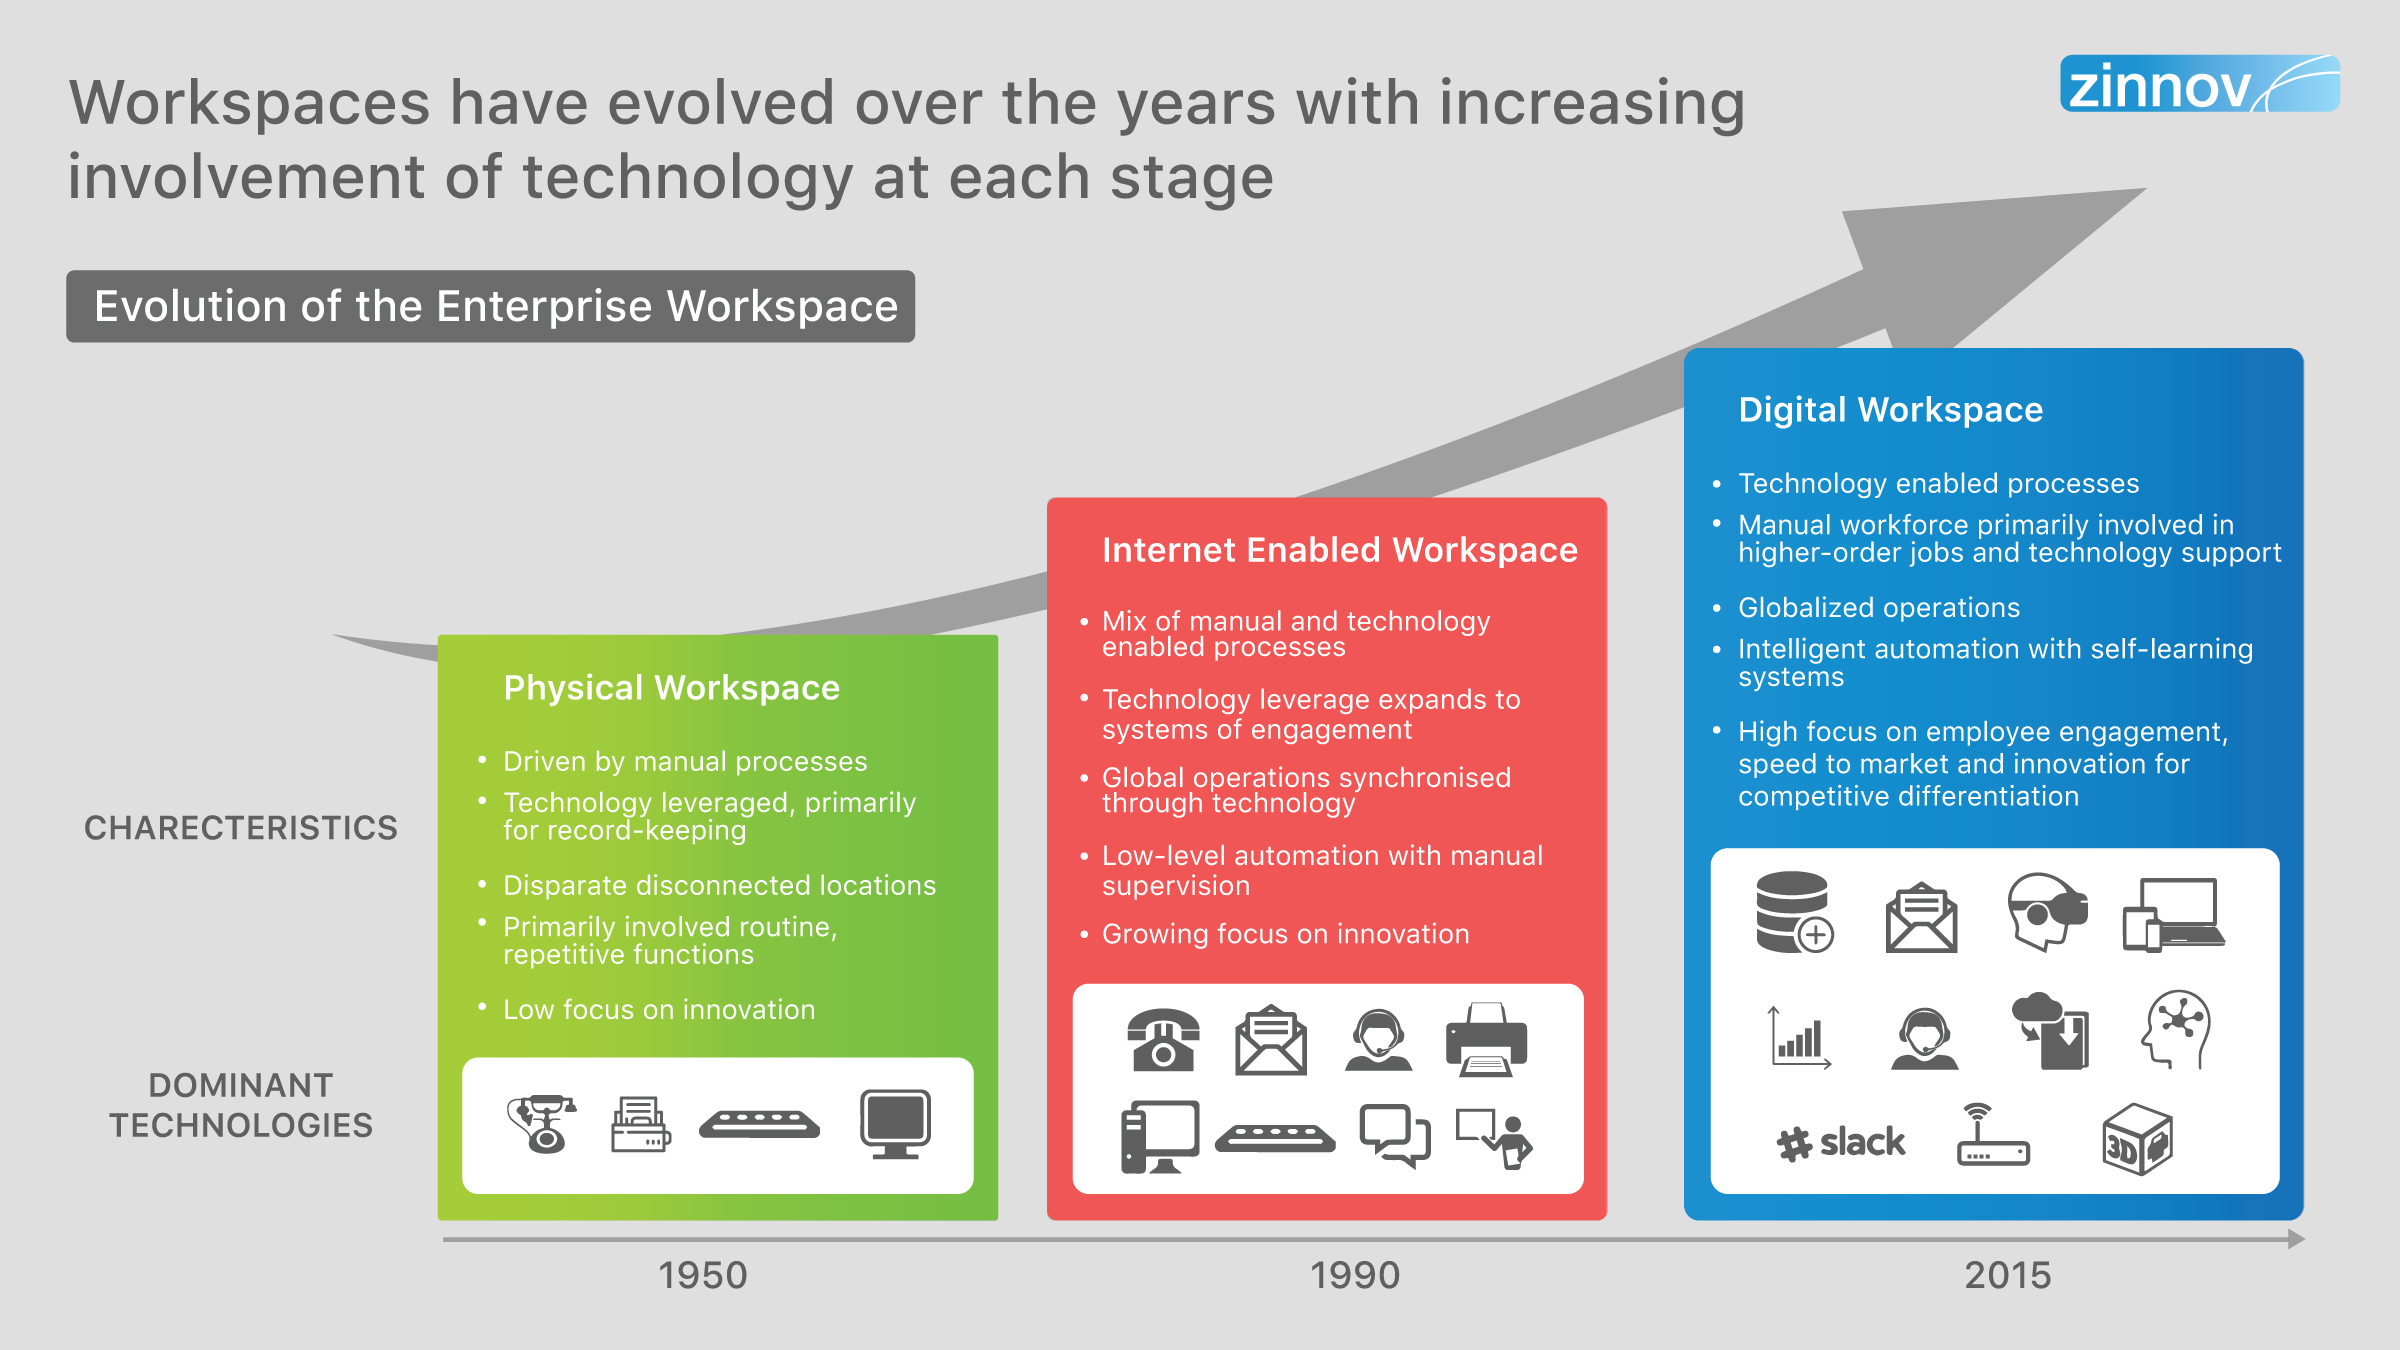 Evolution of Enterprise Workspaces